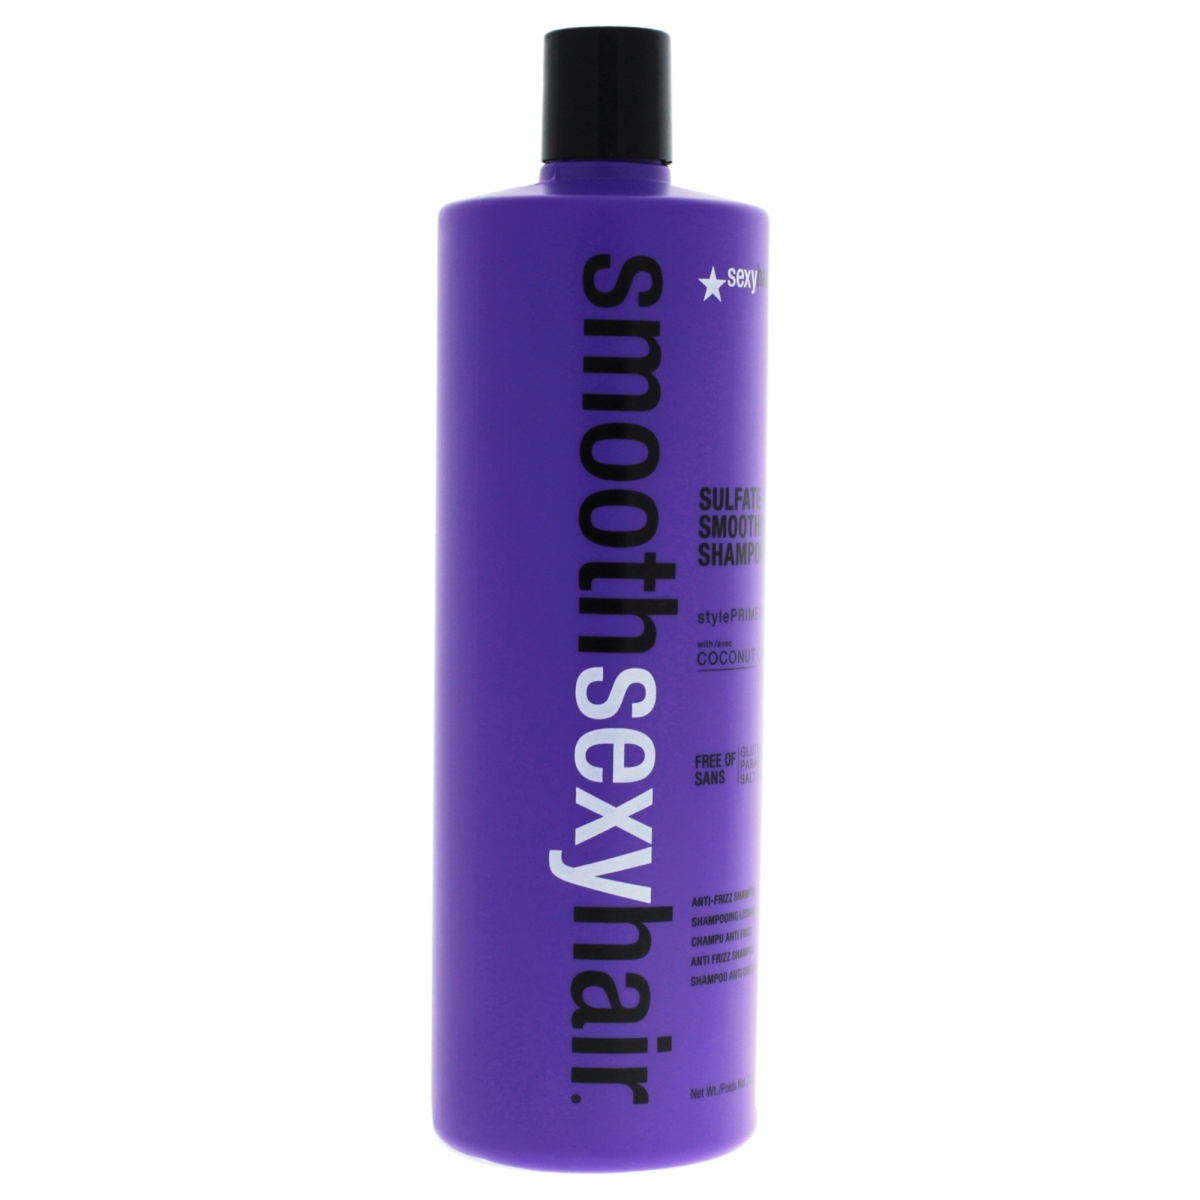 U-hc-11611 Smooth Sulfate-free Smoothing Shampoo For Unisex - 33.8 Oz